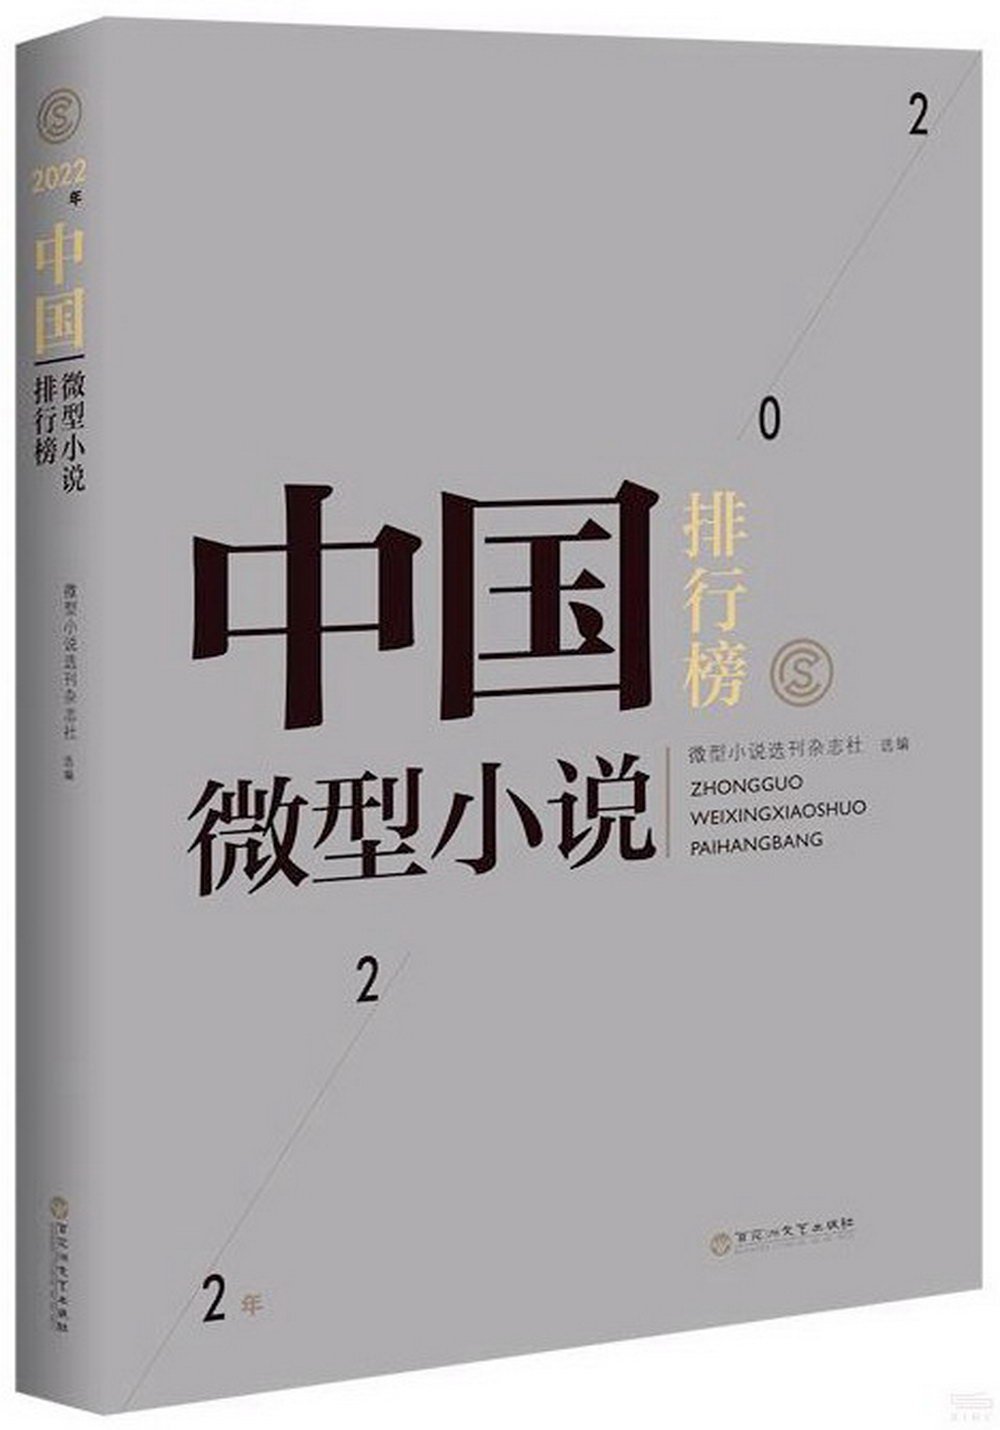 2022年中國微型小說排行榜